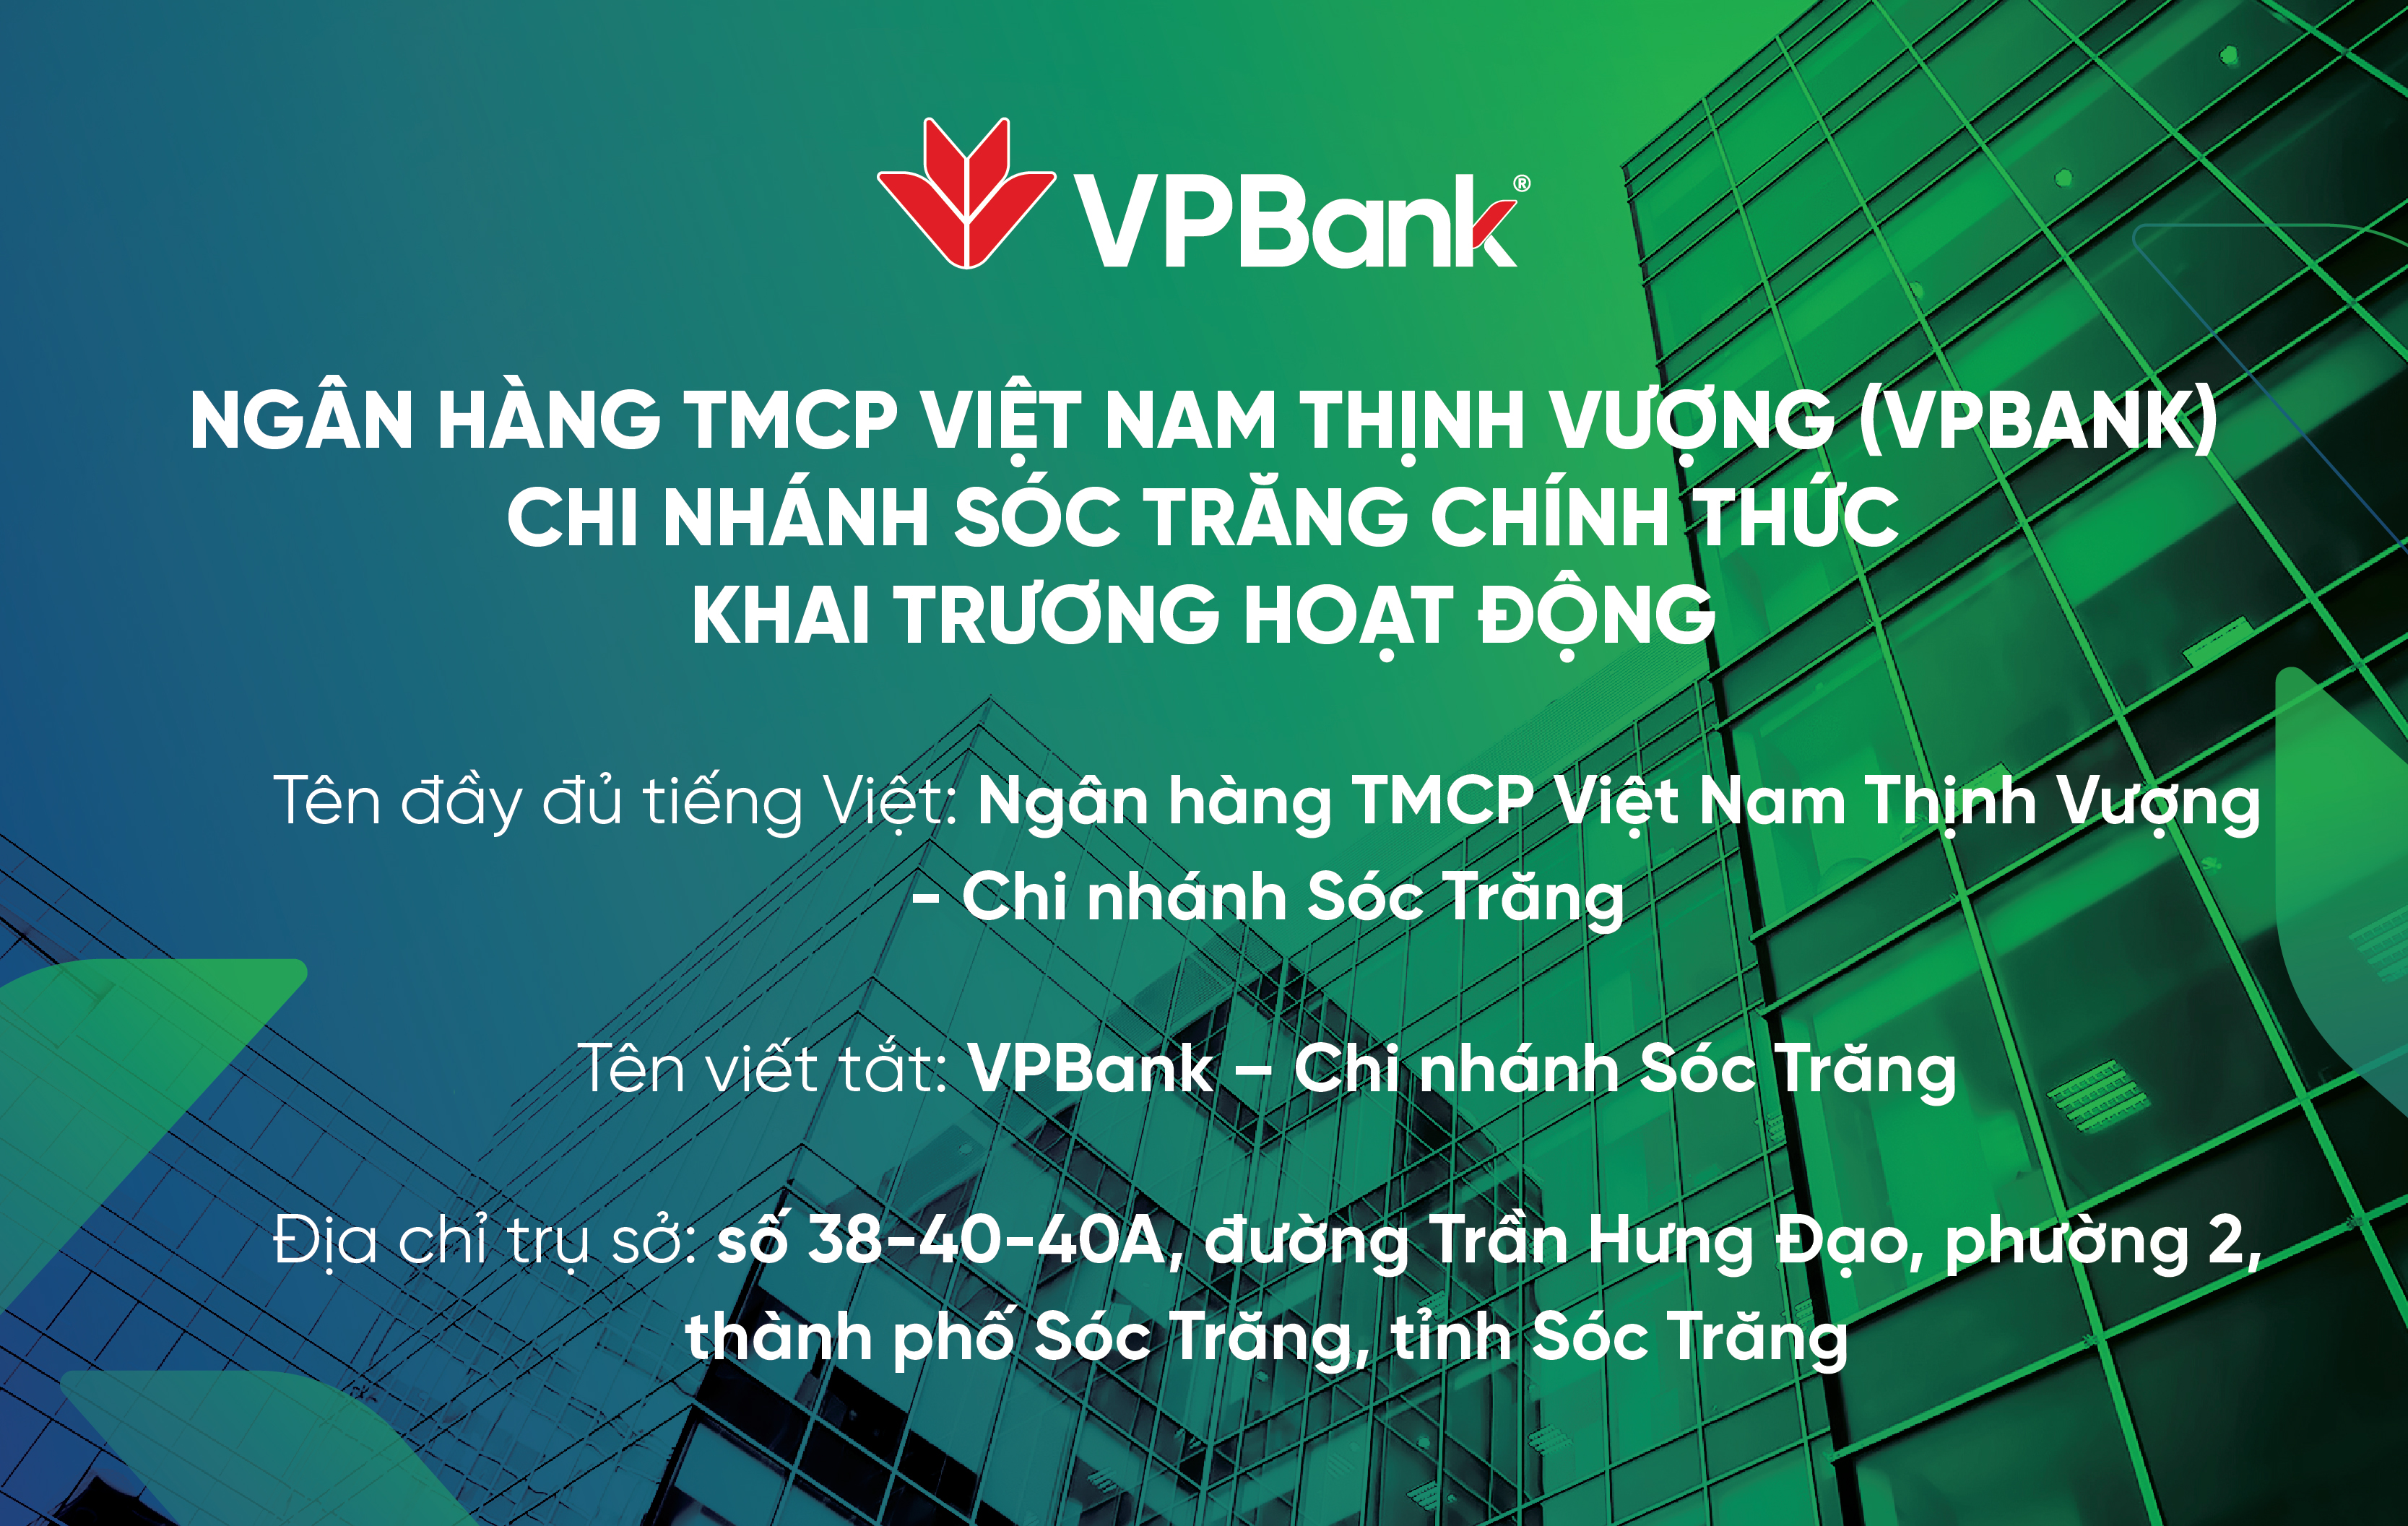 CN Soc Trang